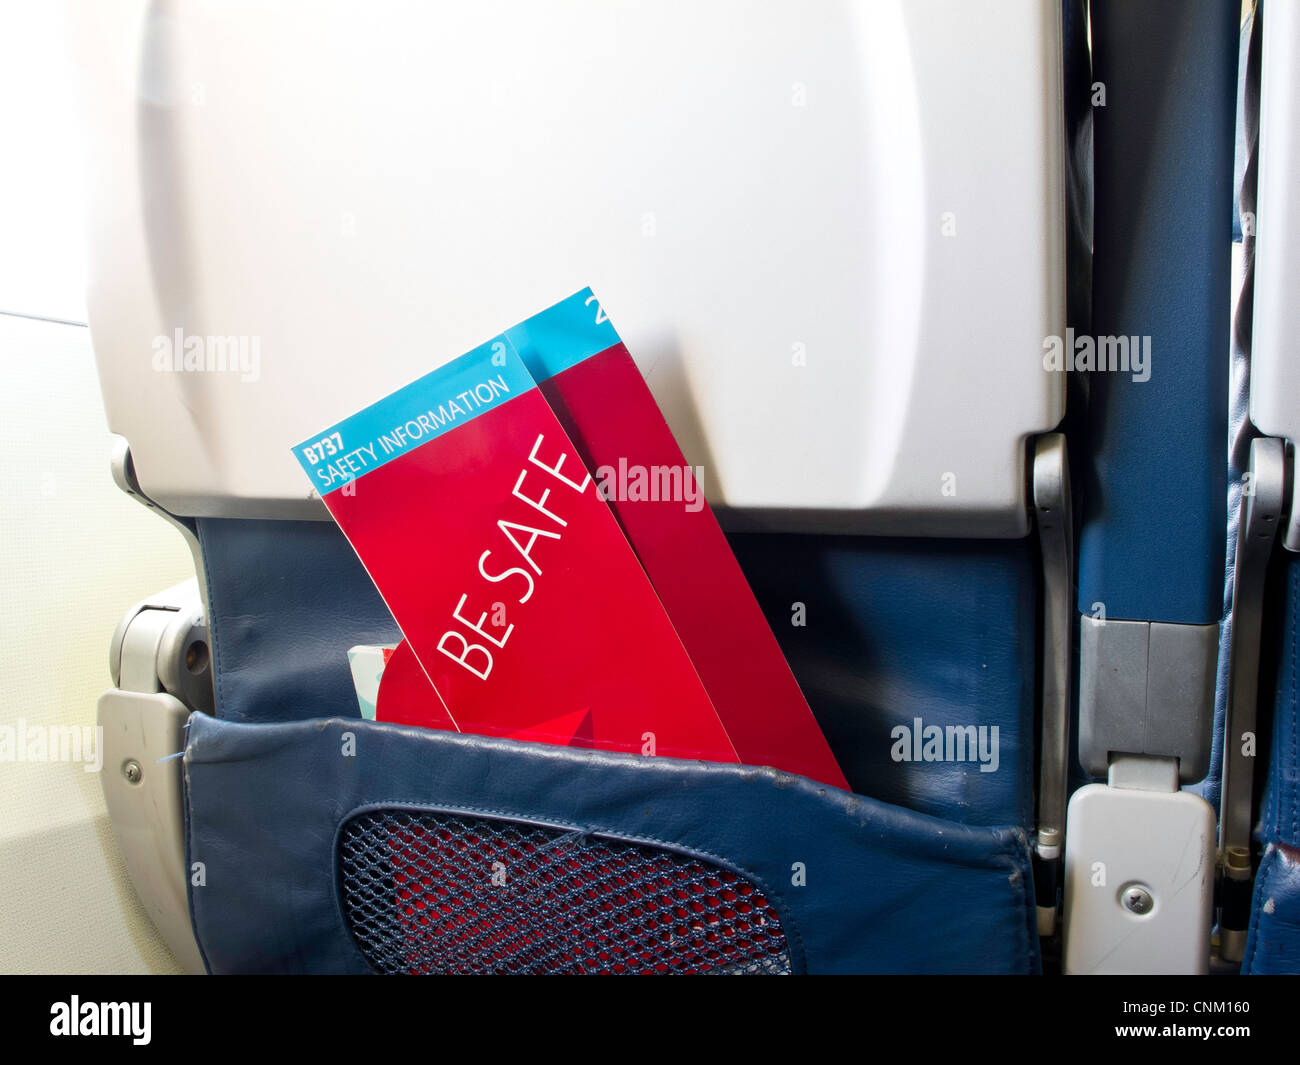 Werden sicher Sicherheit Informationsbroschüre Sitztasche Flugzeug  Stockfotografie - Alamy